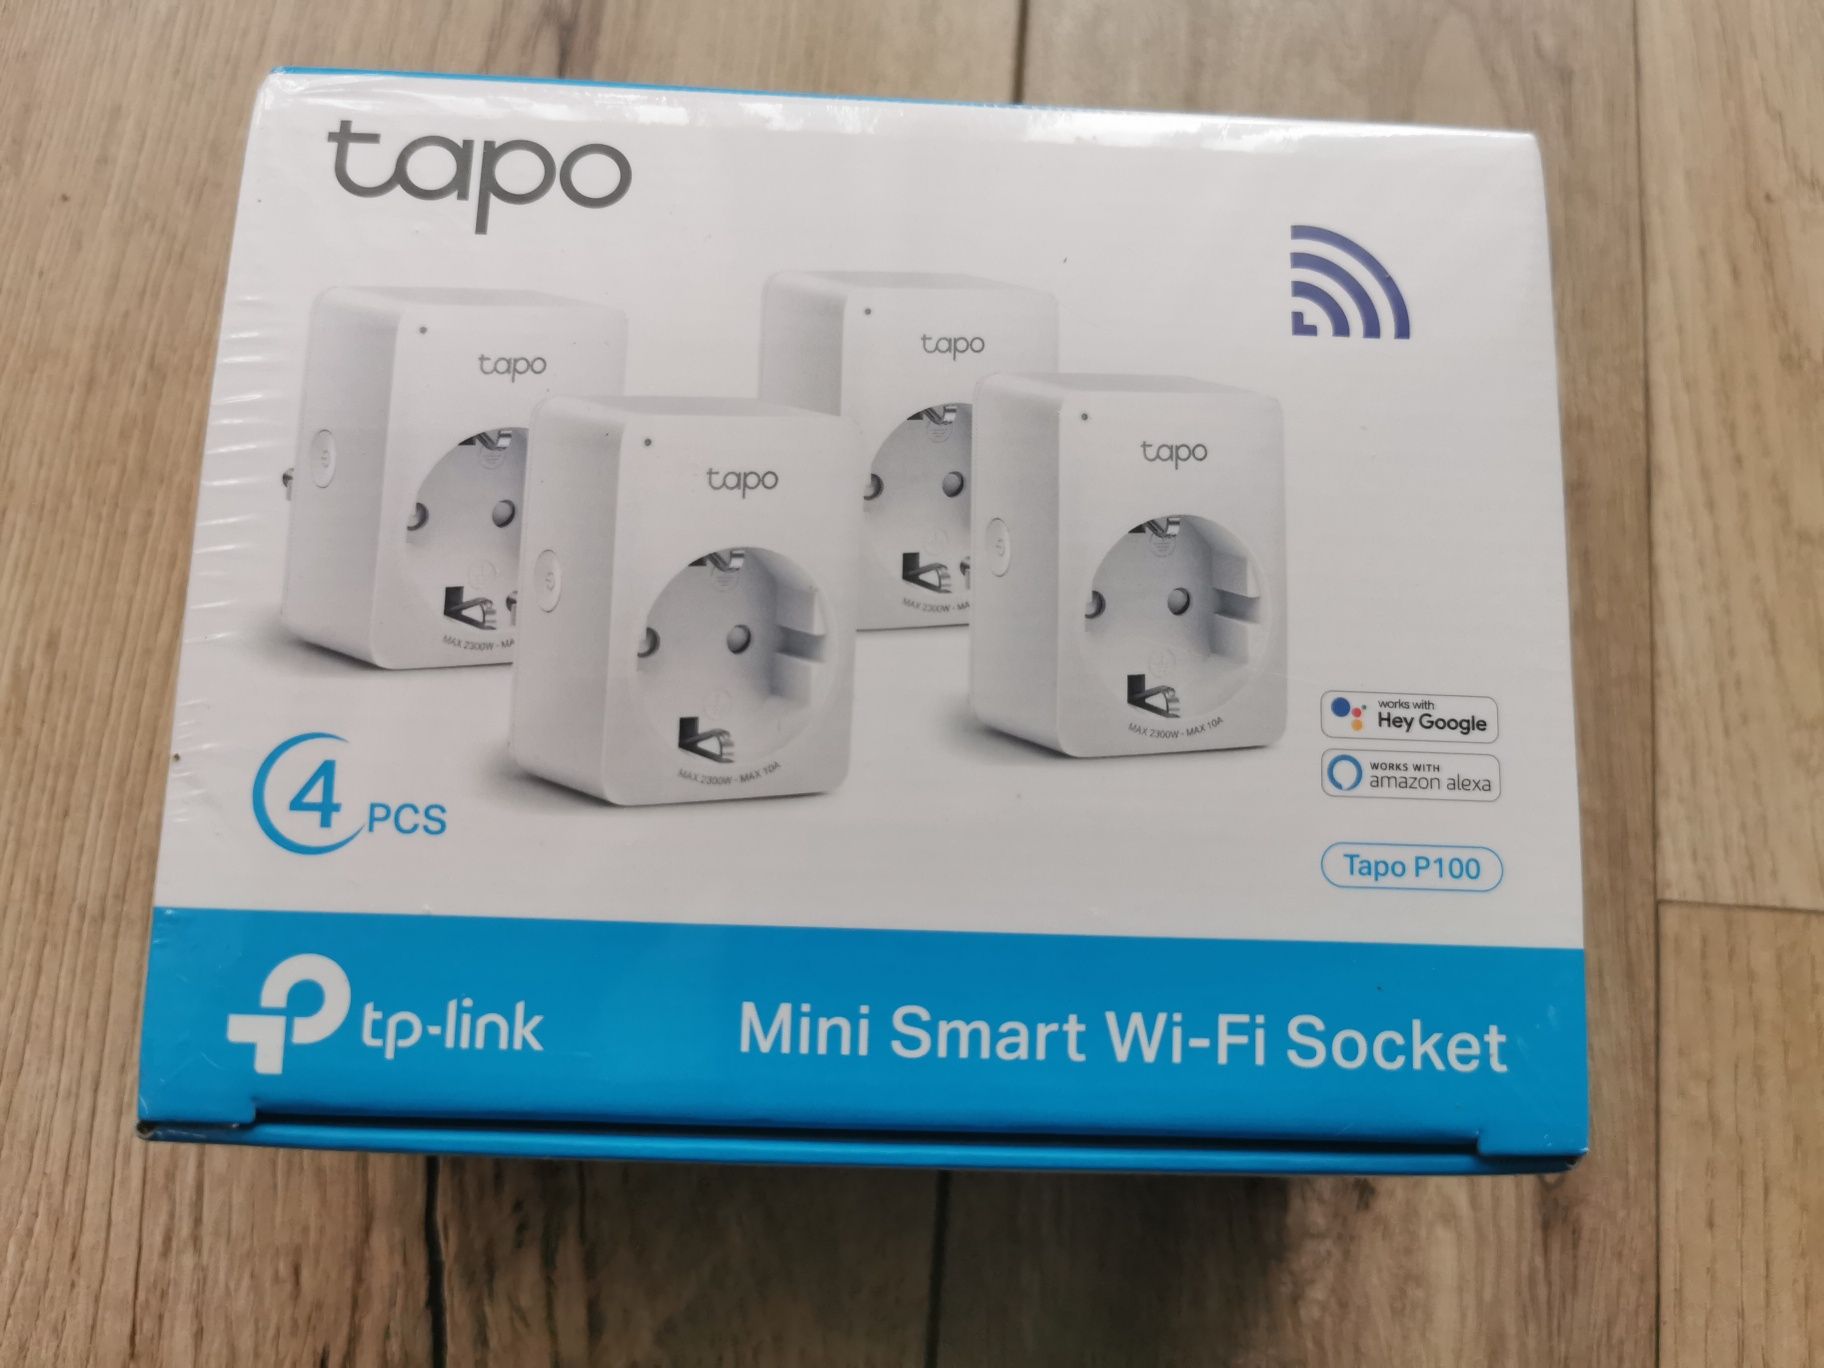 4 x Gniazdko gniazdka Smart WIFI TP-Link Tapo P100 kpl. (4 szt.)